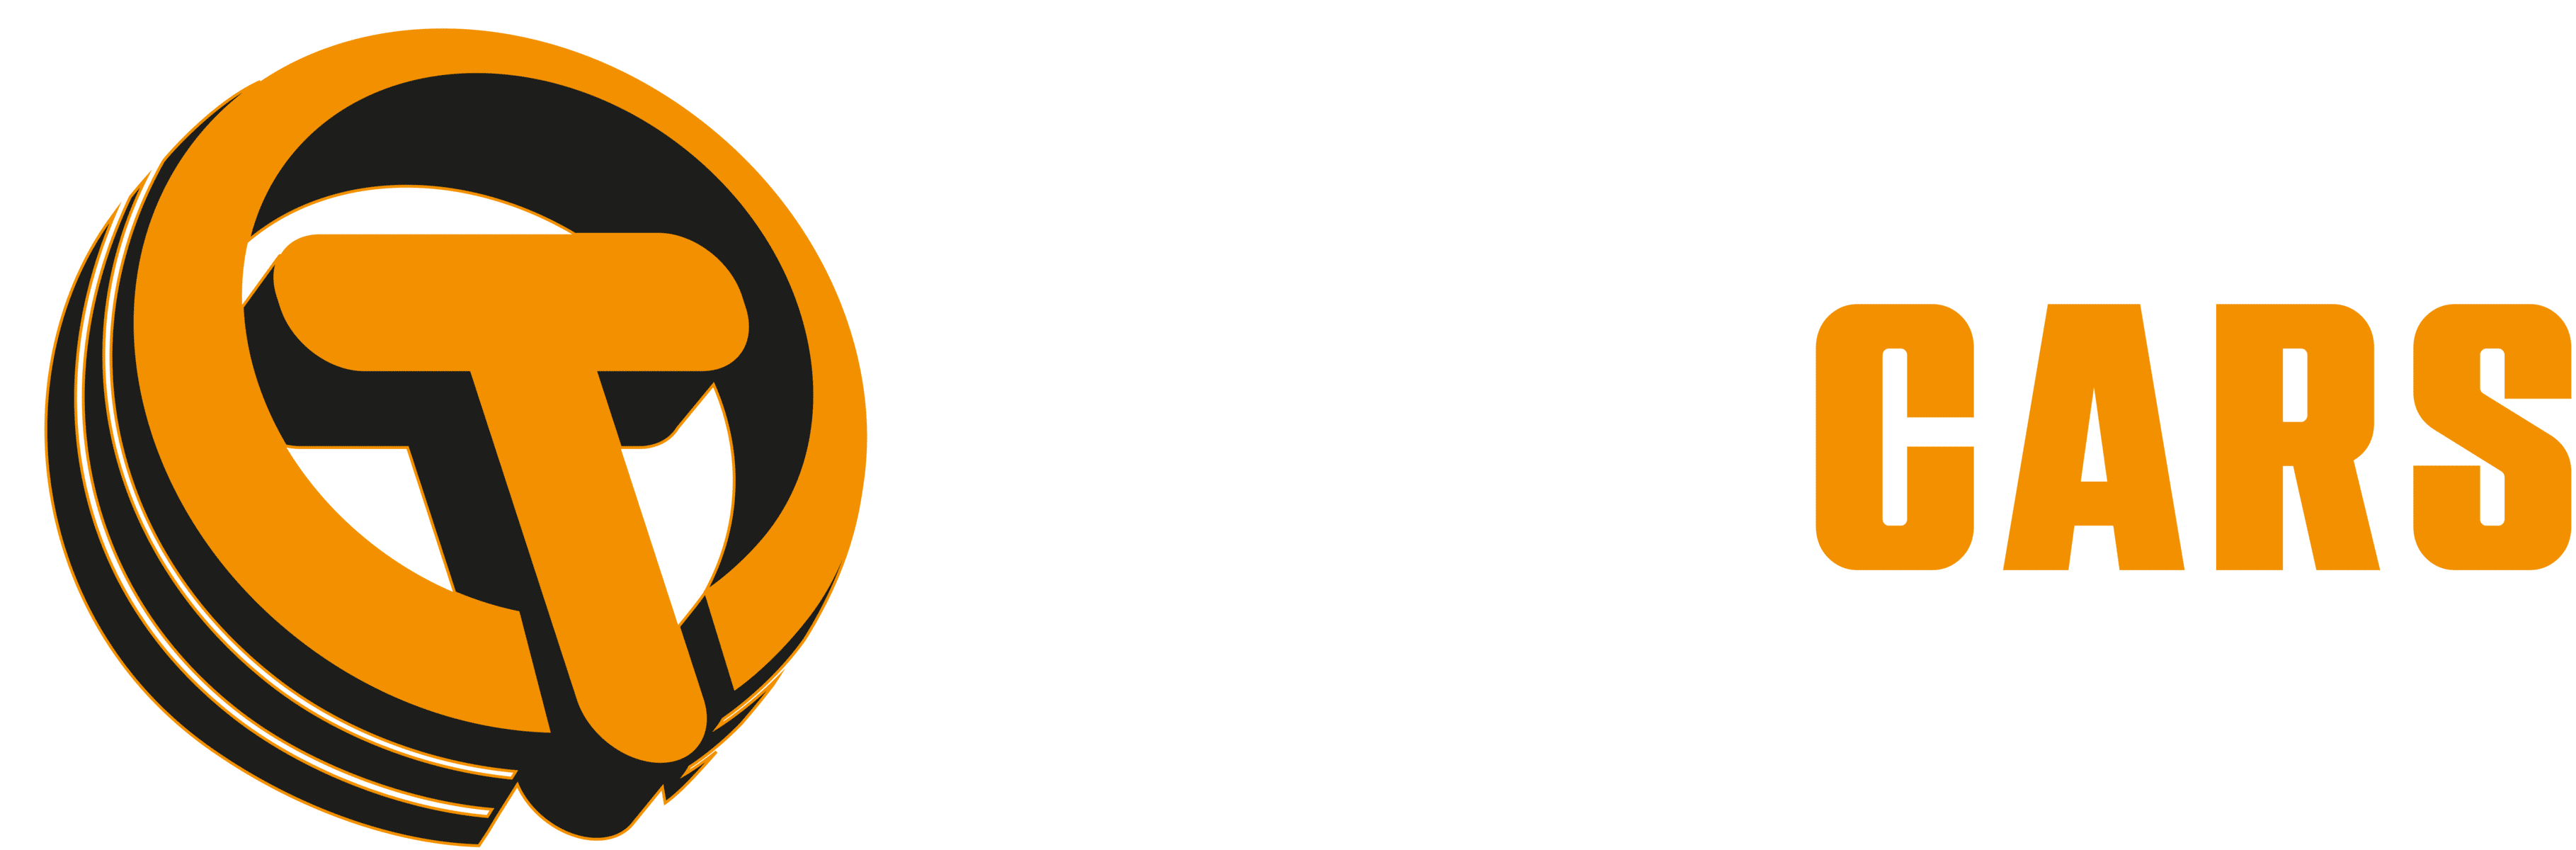 Trubicars Logo on Draker Background